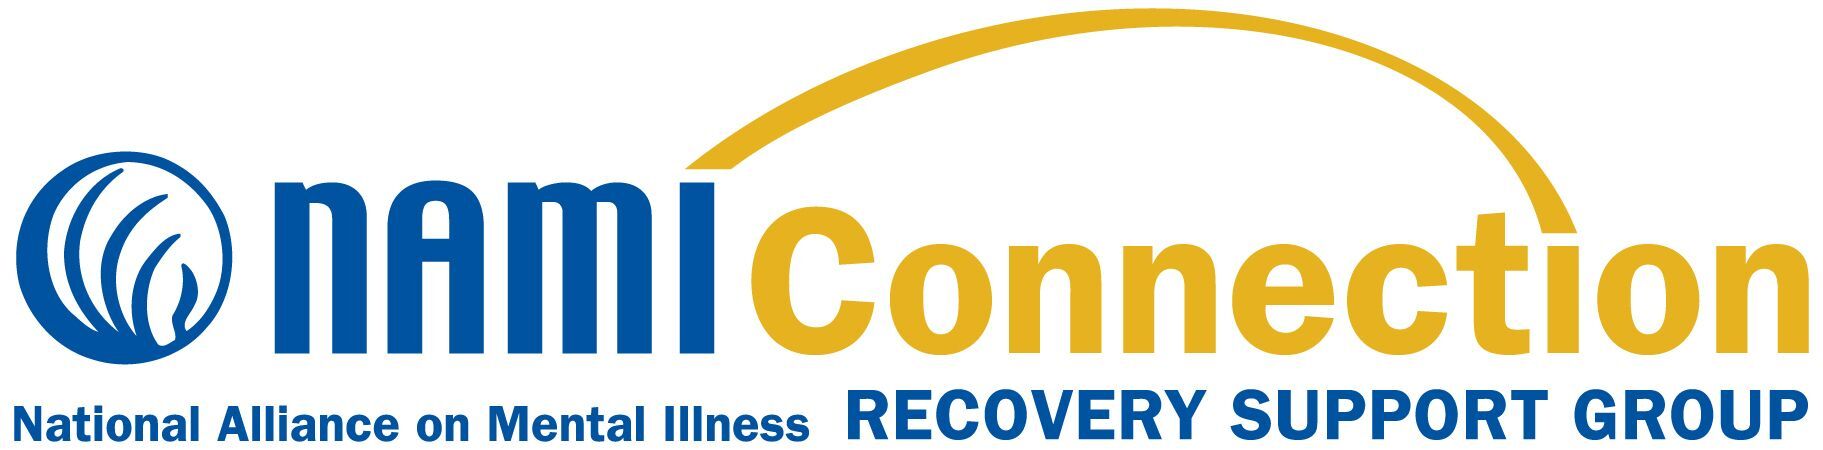 NAMI Connection logo 